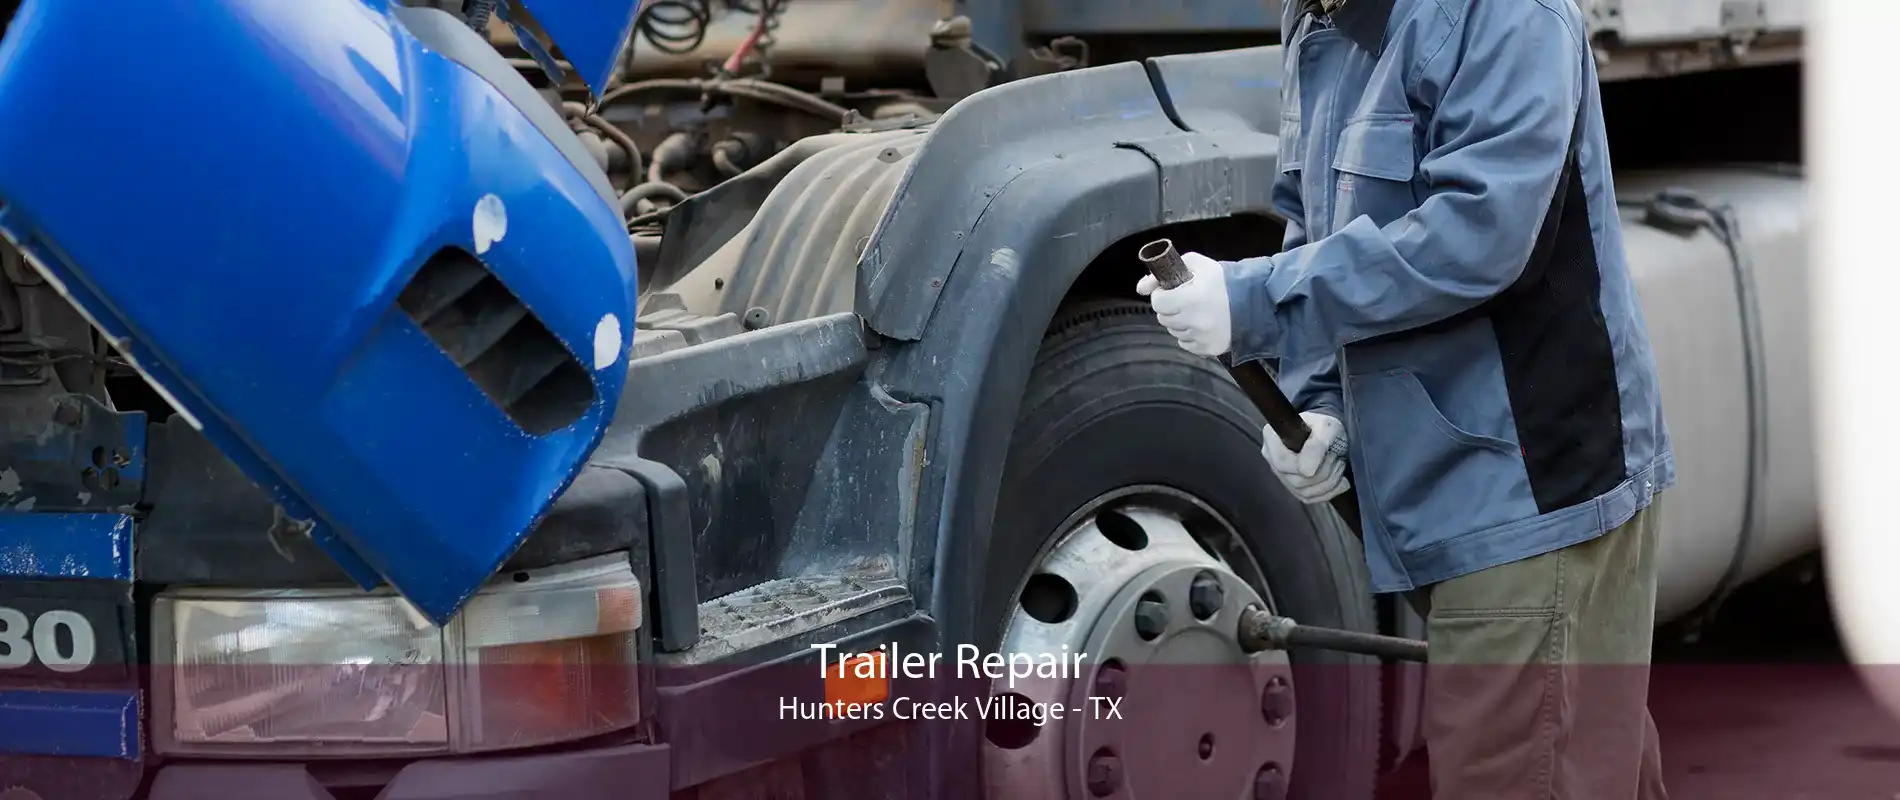 Trailer Repair Hunters Creek Village - TX